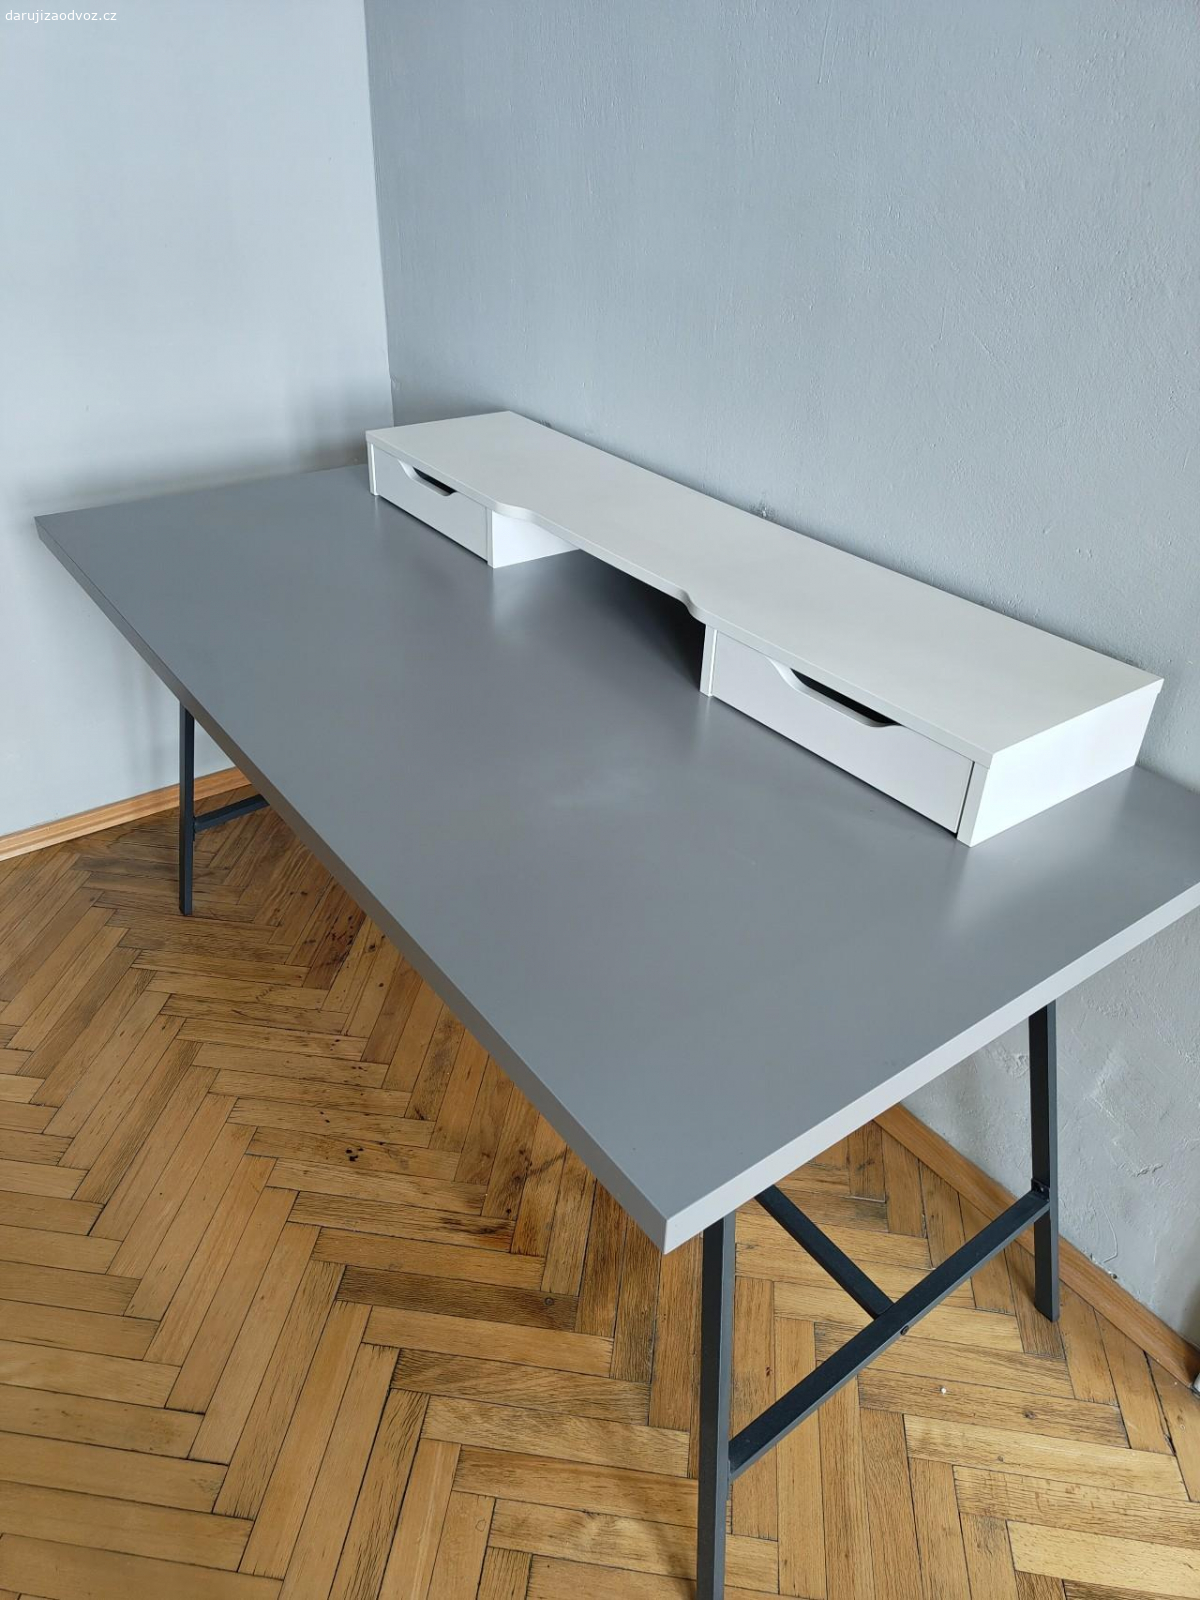 Pracovní stůl ikea. Deska 150 x 75 cm, položená na podstavcích bez připevnění. Používán 8 let jako pracovní stůl, odpovídající opotřebení - hlavně ošoupaný, kde byla položena myš.